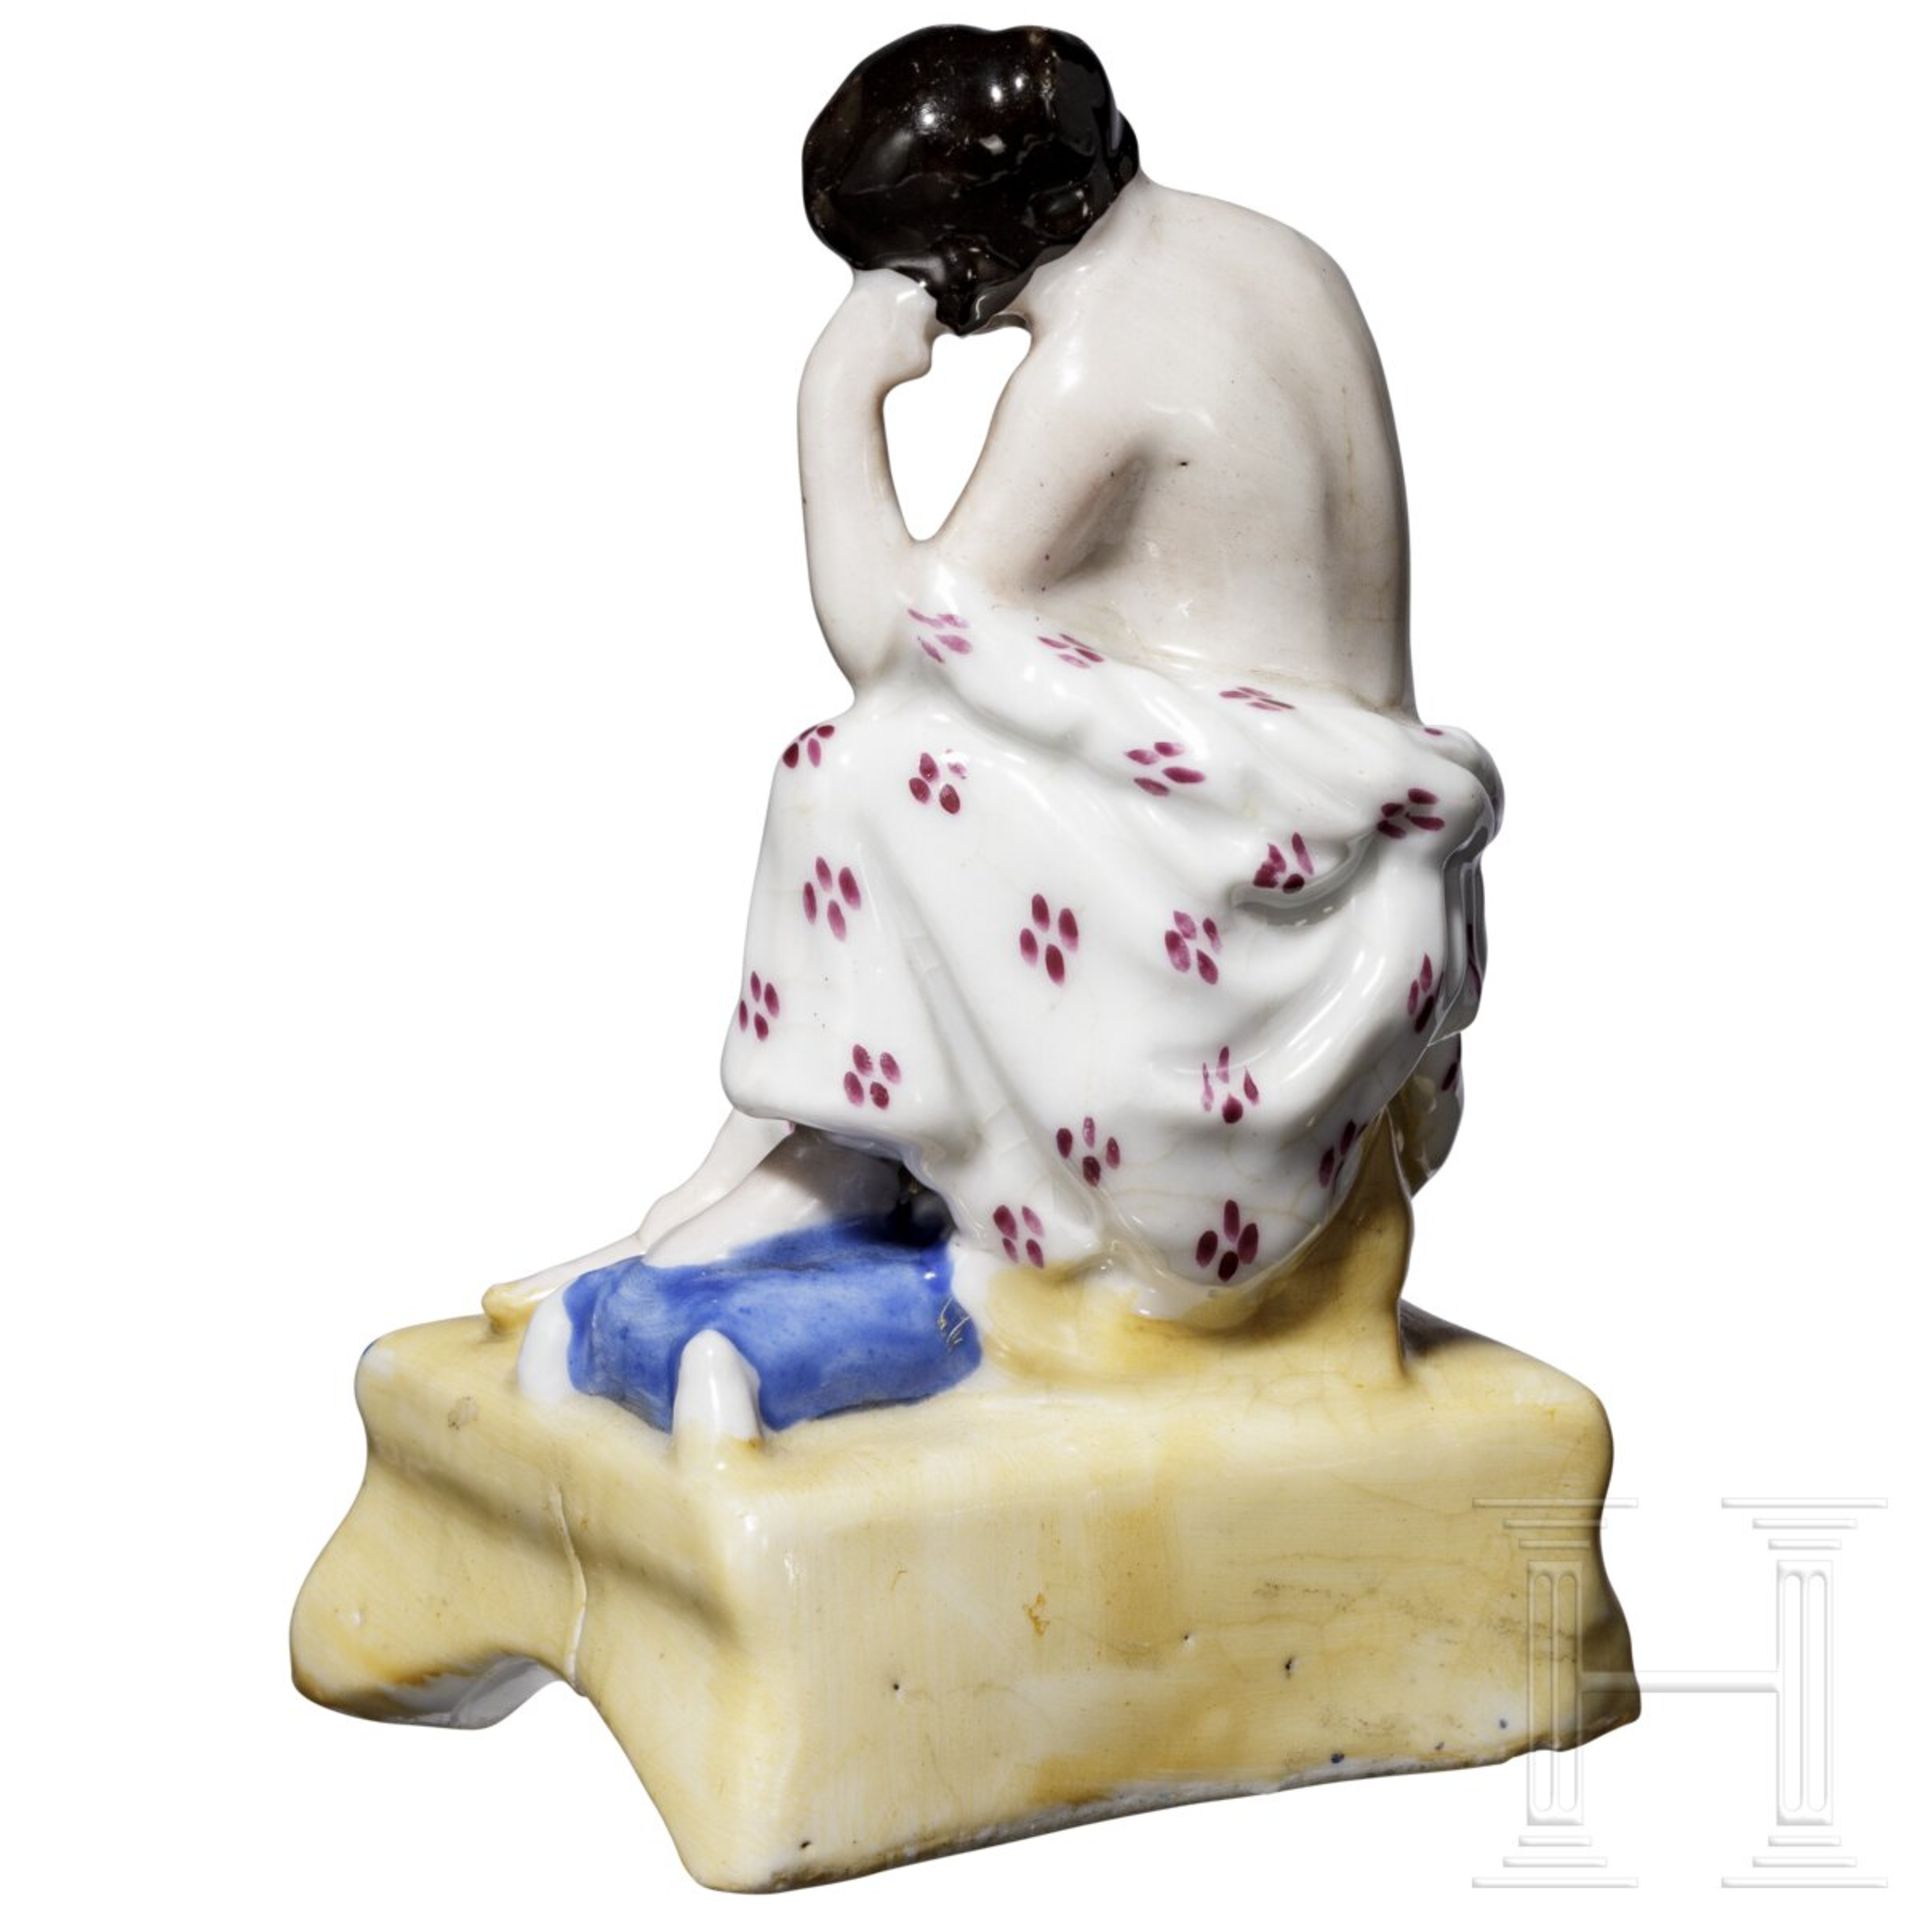 Erotische Porzellanfigur als Duftbehälter, russische Privatmanufaktur, Mitte 19. Jhdt. - Image 3 of 5